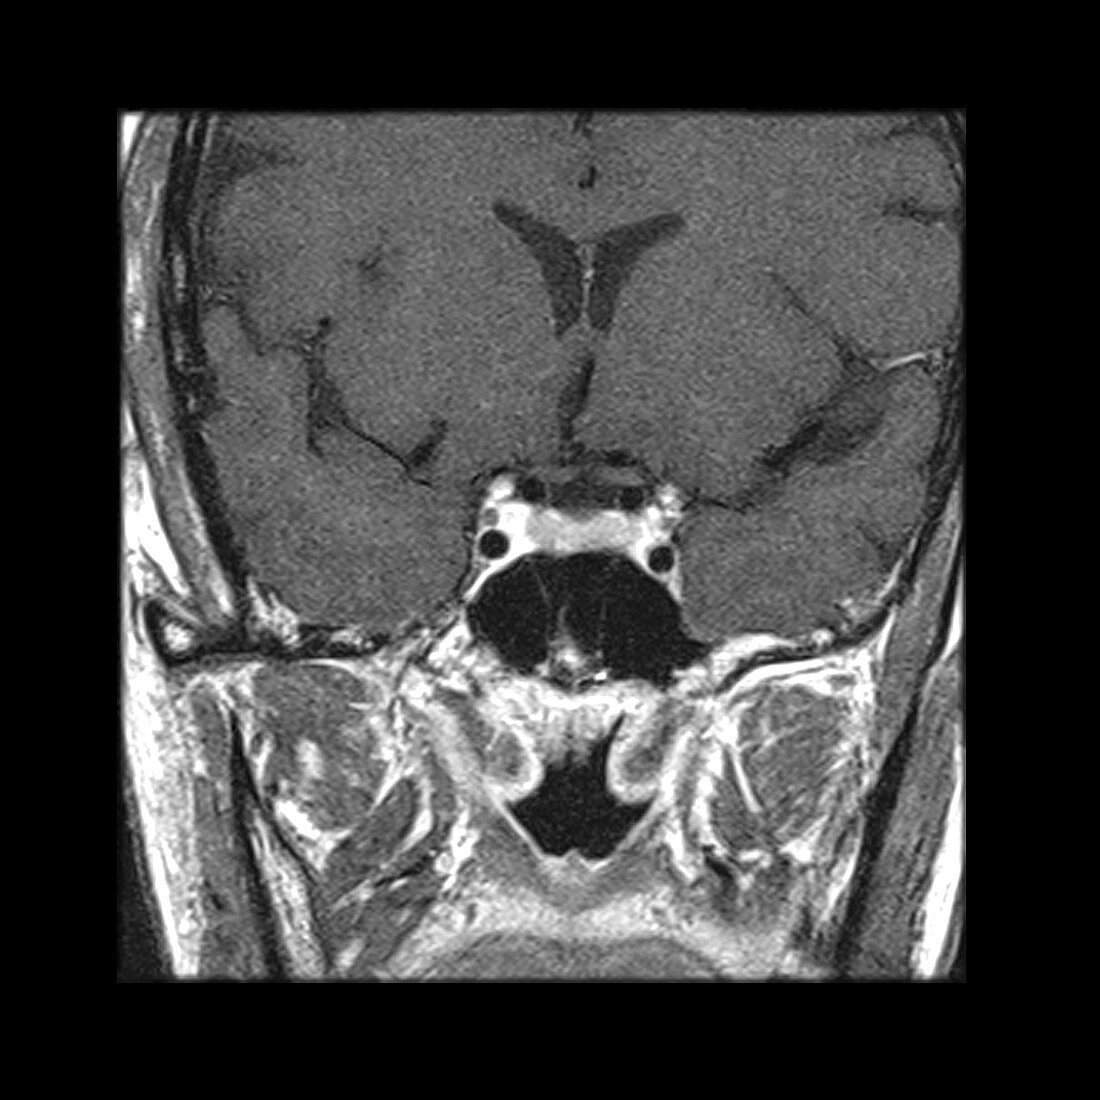 'Oculomotor Nerve in Cavernous Sinus,MRI